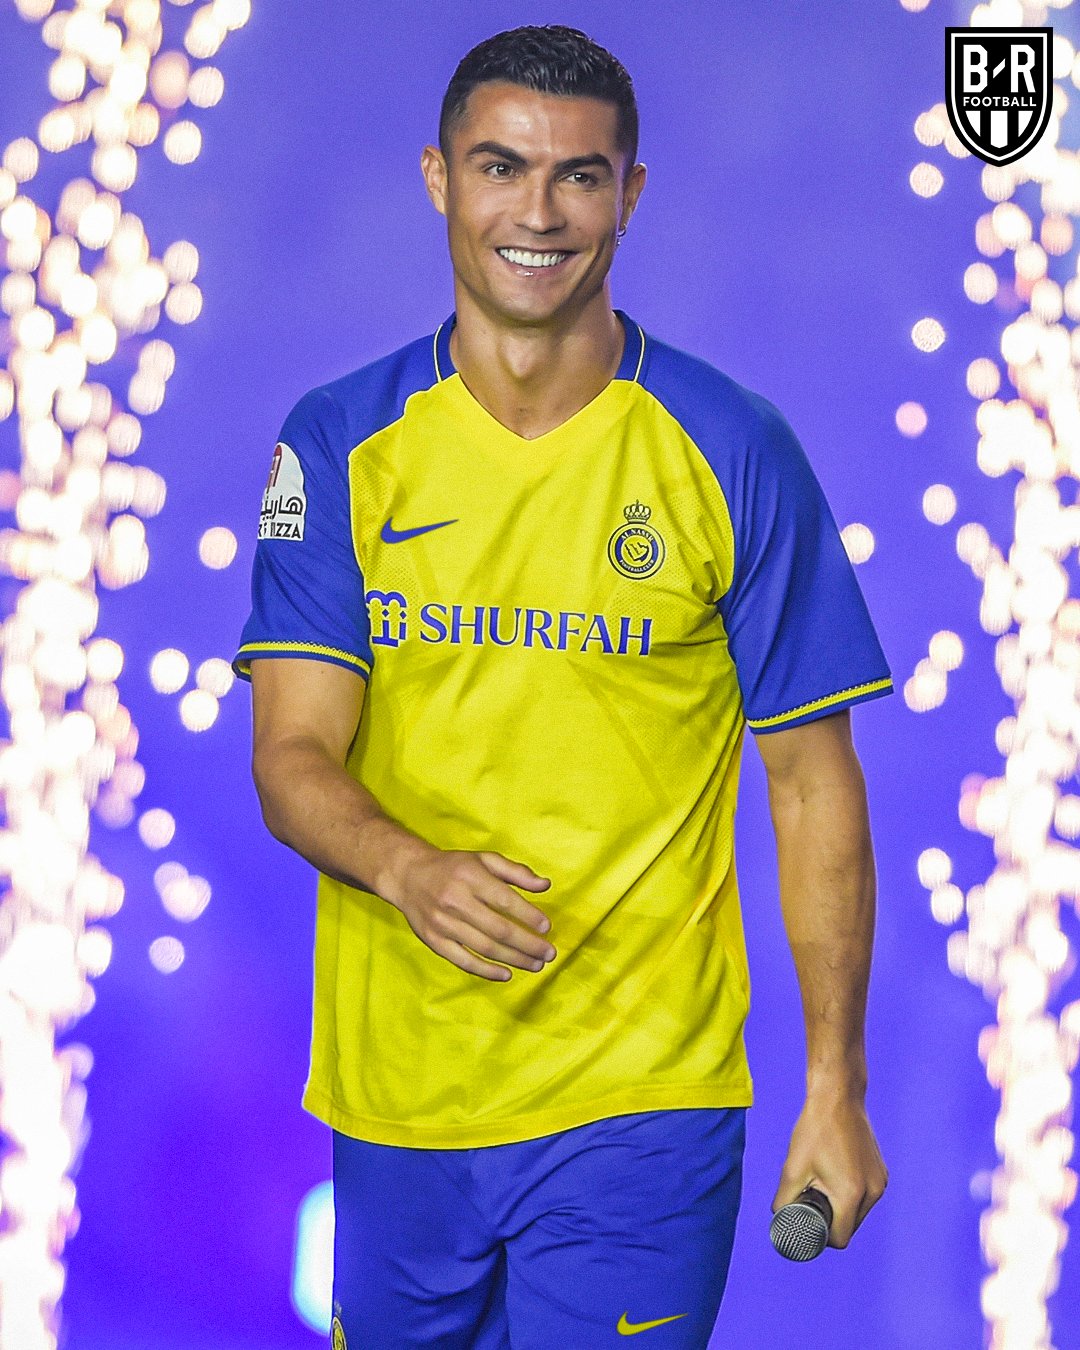 Cristiano Ronaldo Fútbol Equipaciones y camisetas. Nike ES